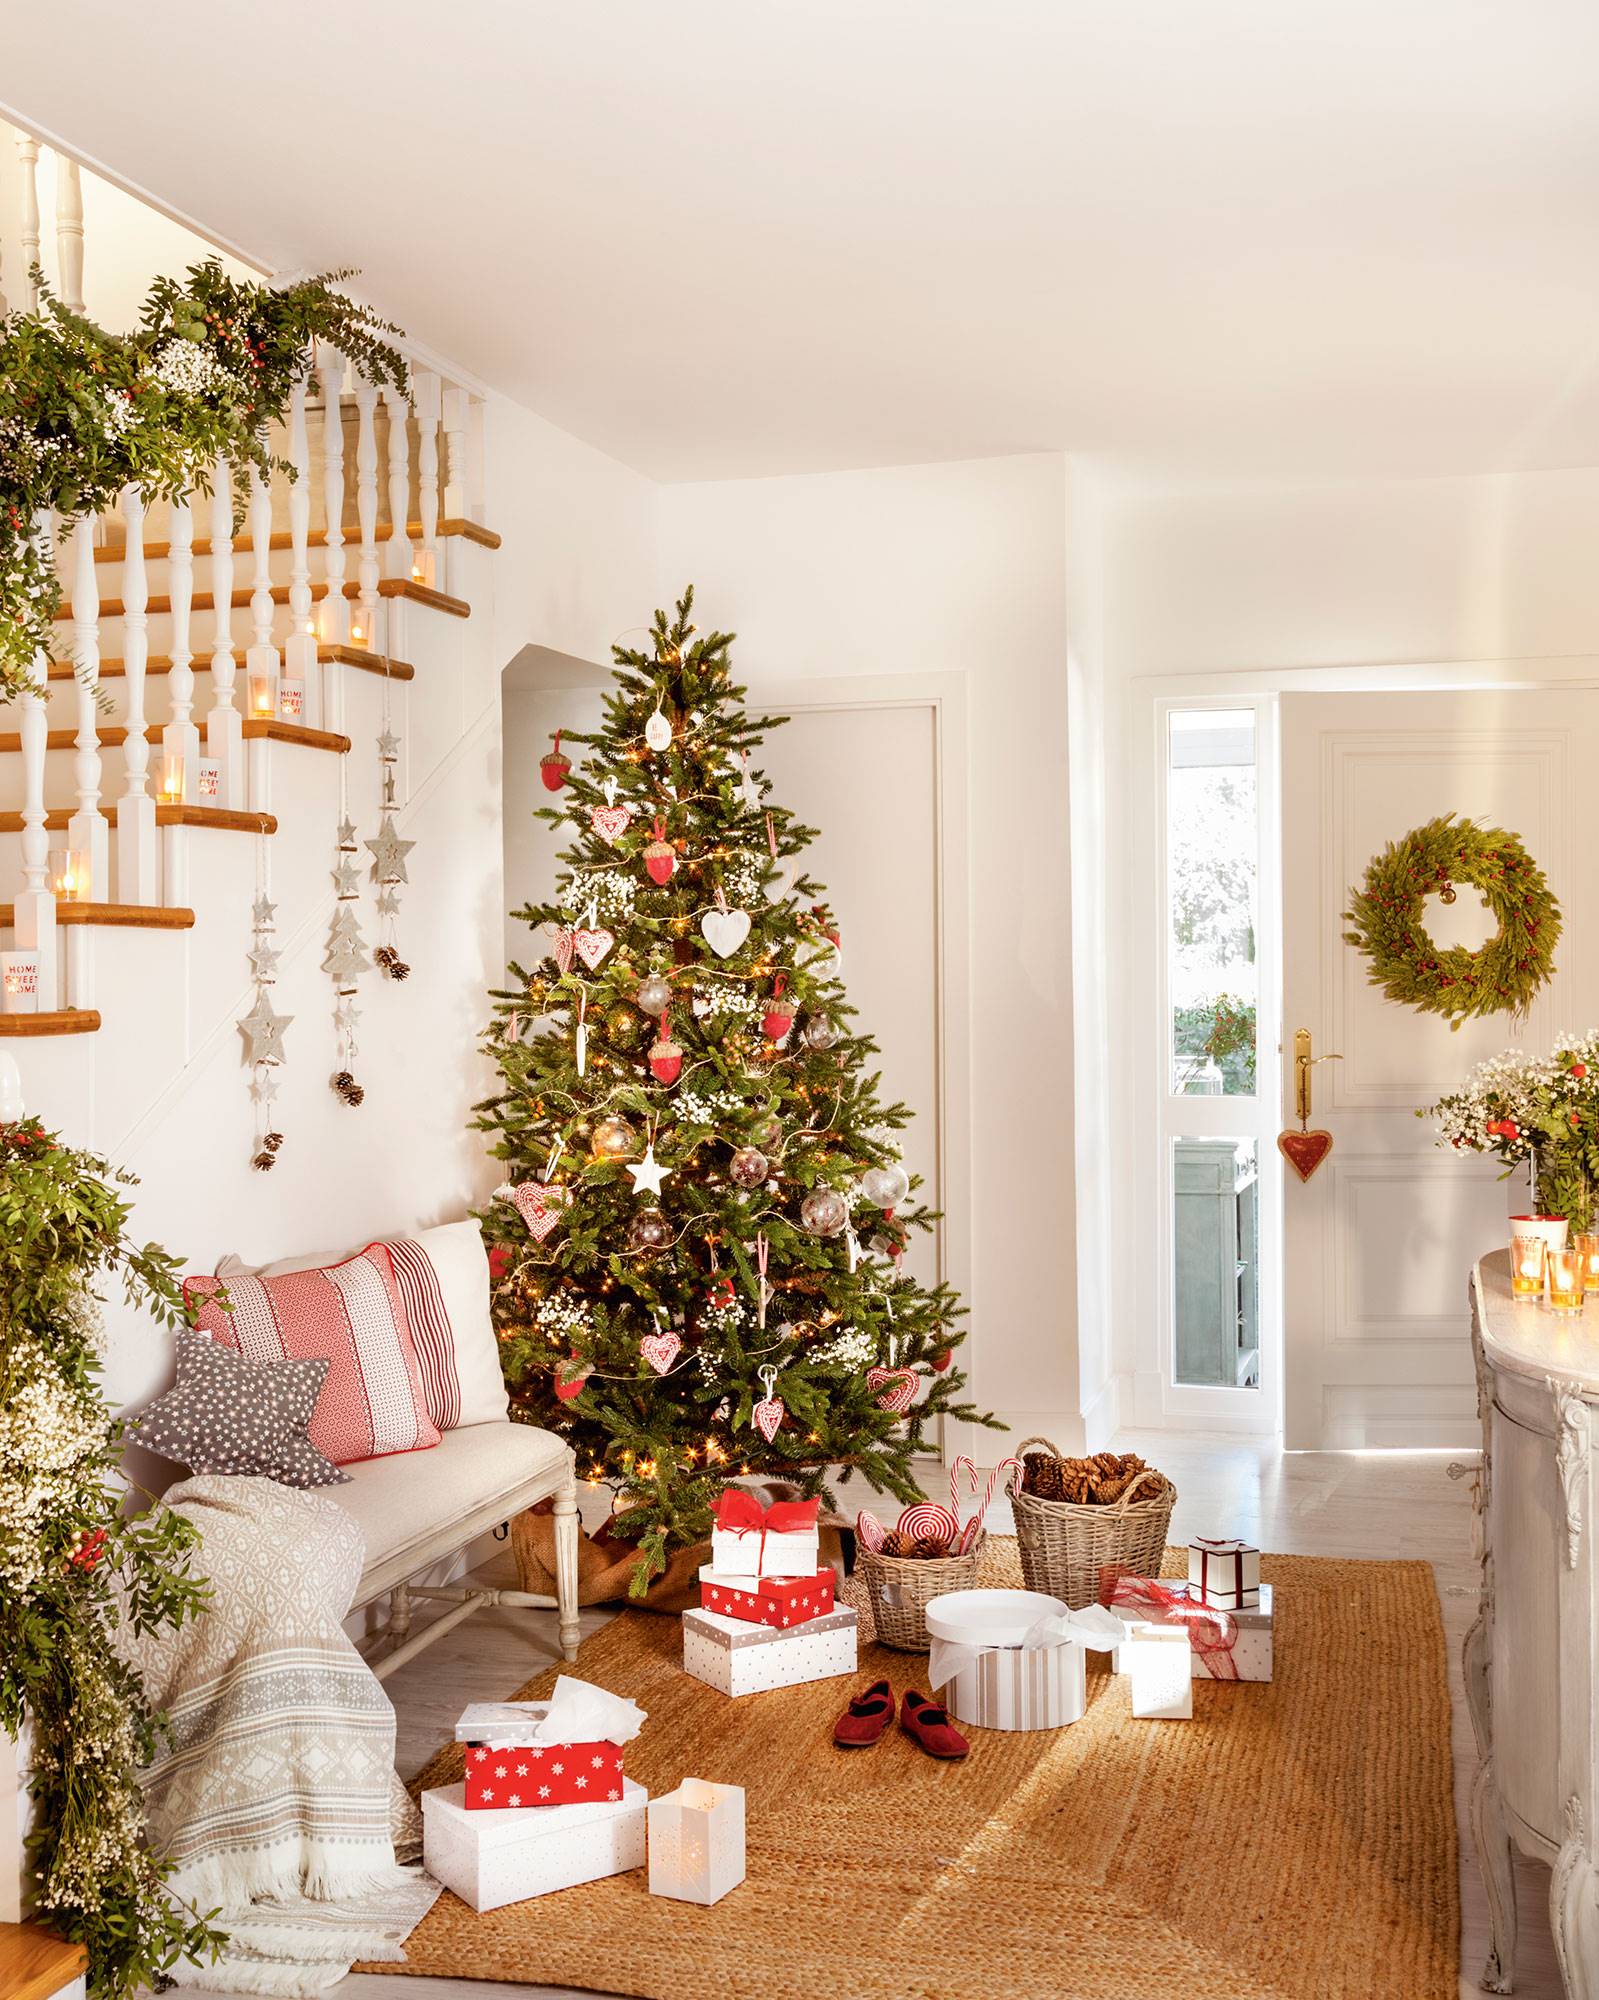 Recibidor decorado de Navidad con árbol con adornos en blanco, cristal y rojo